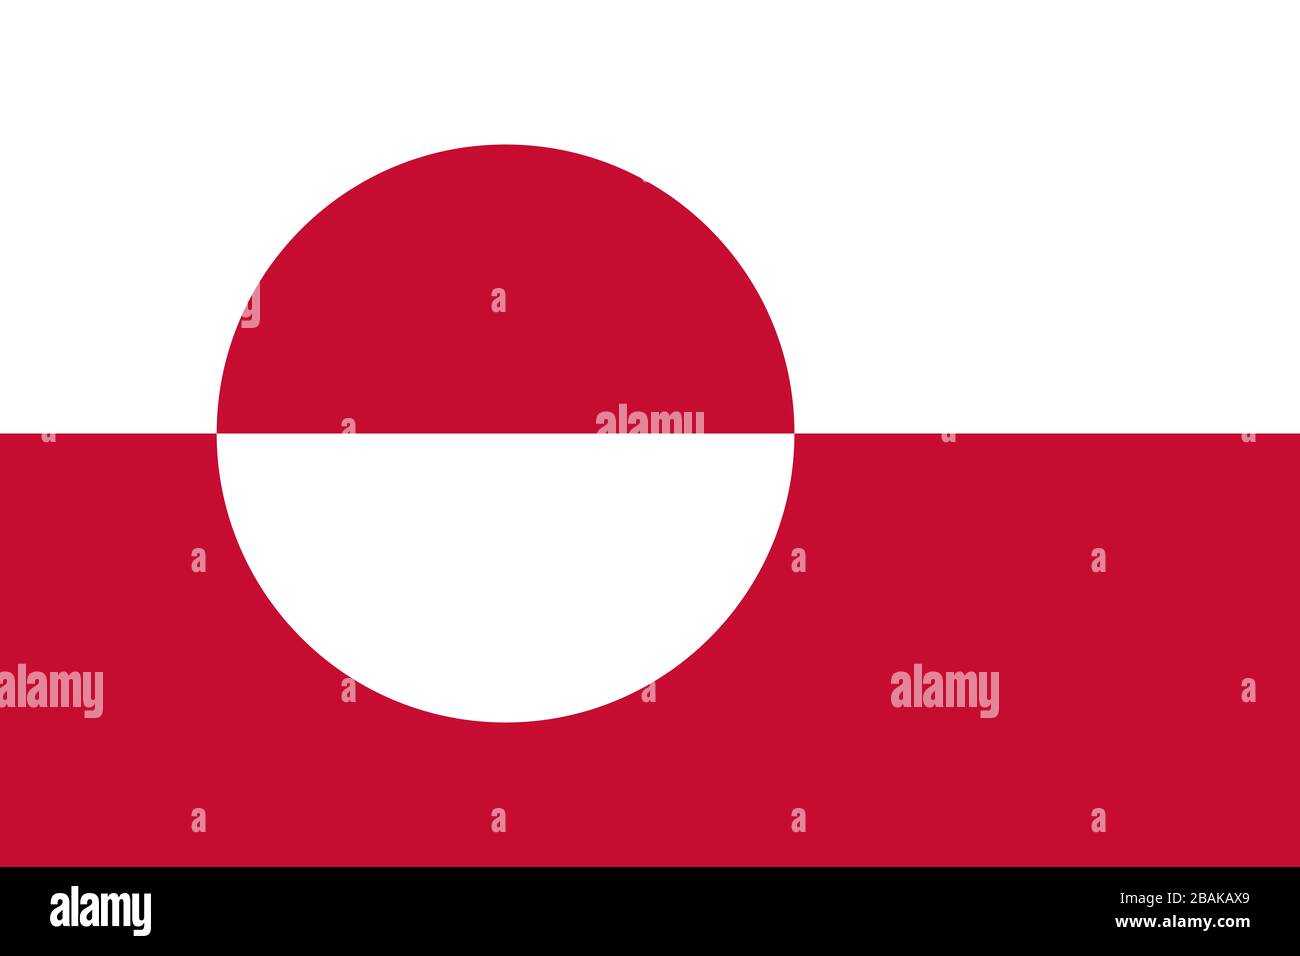 Drapeau du Groenland - Rapport standard du drapeau groenlandais - mode couleur RVB réel Banque D'Images